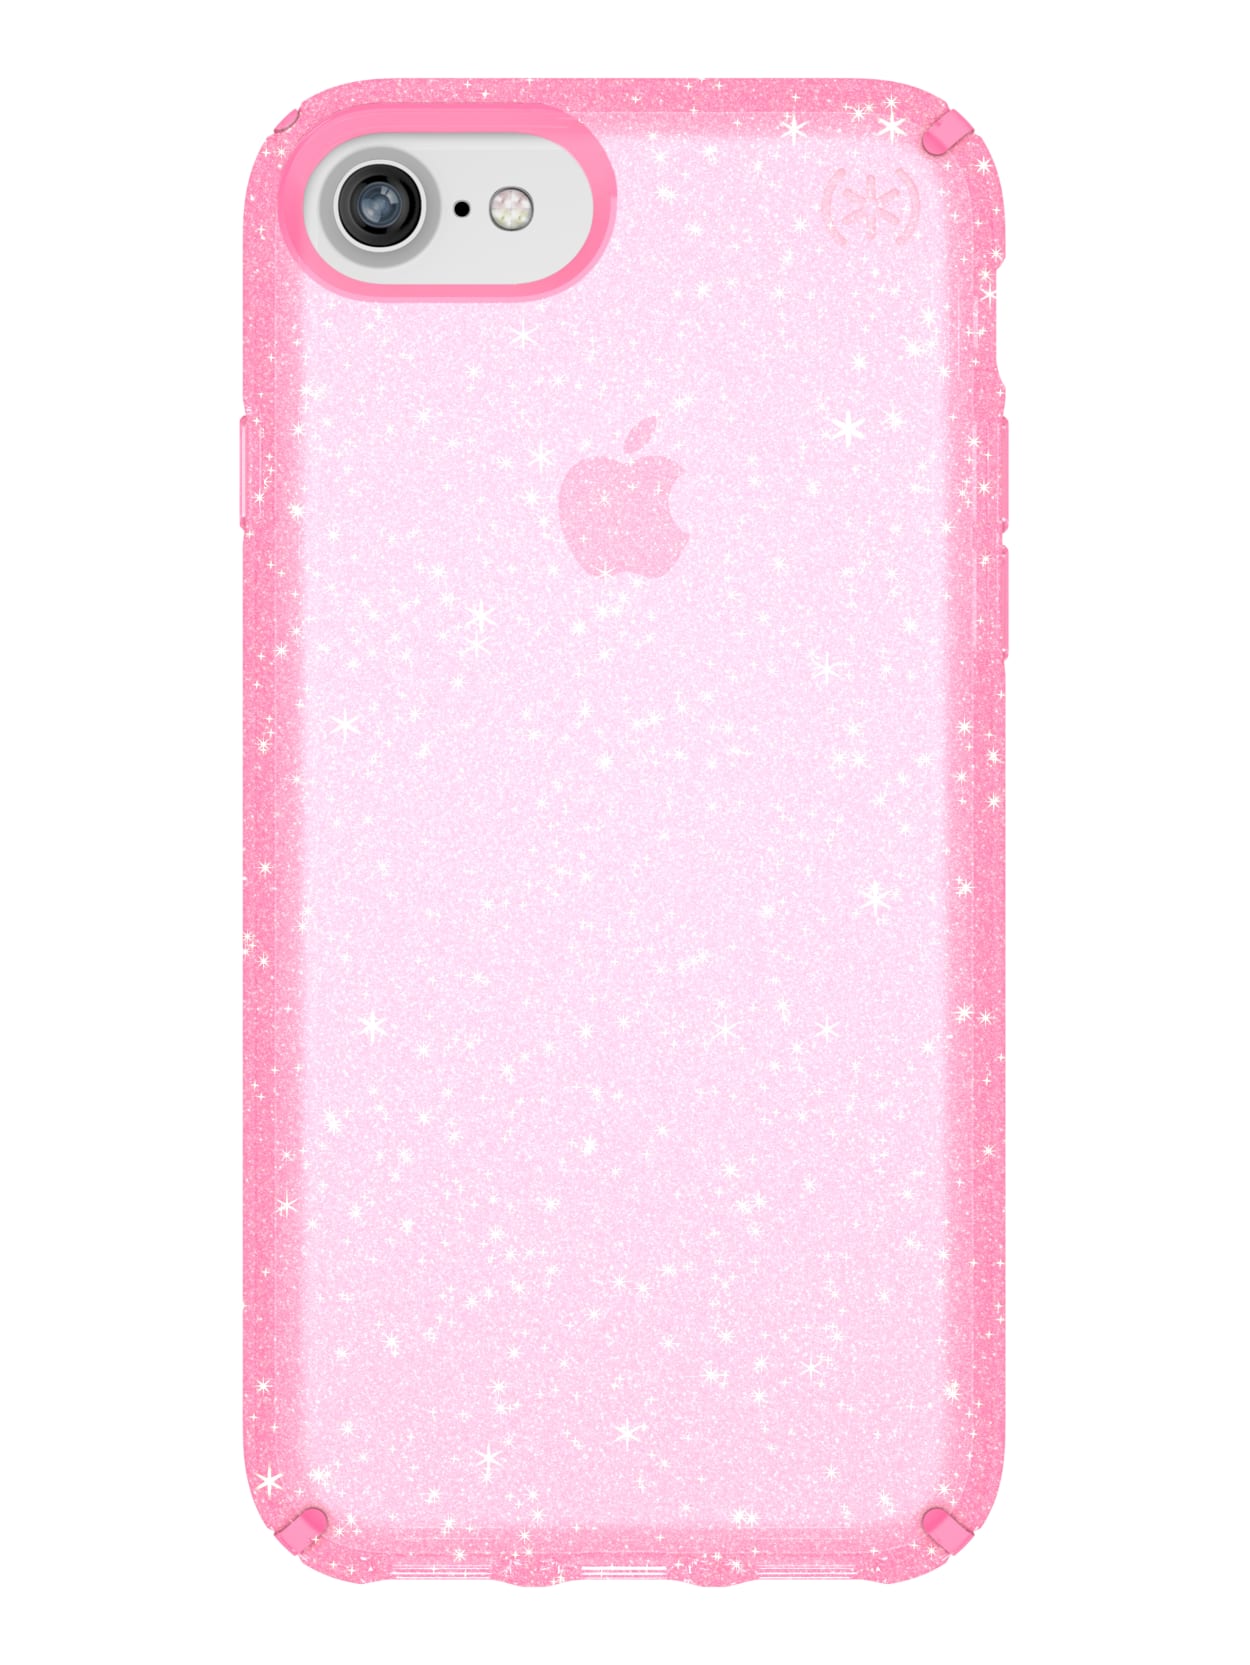 Case SPECK PRESIDIO CLEAR + GLITTER Para iPhone 6/7 (Exclusivo de Apple) - Rosa